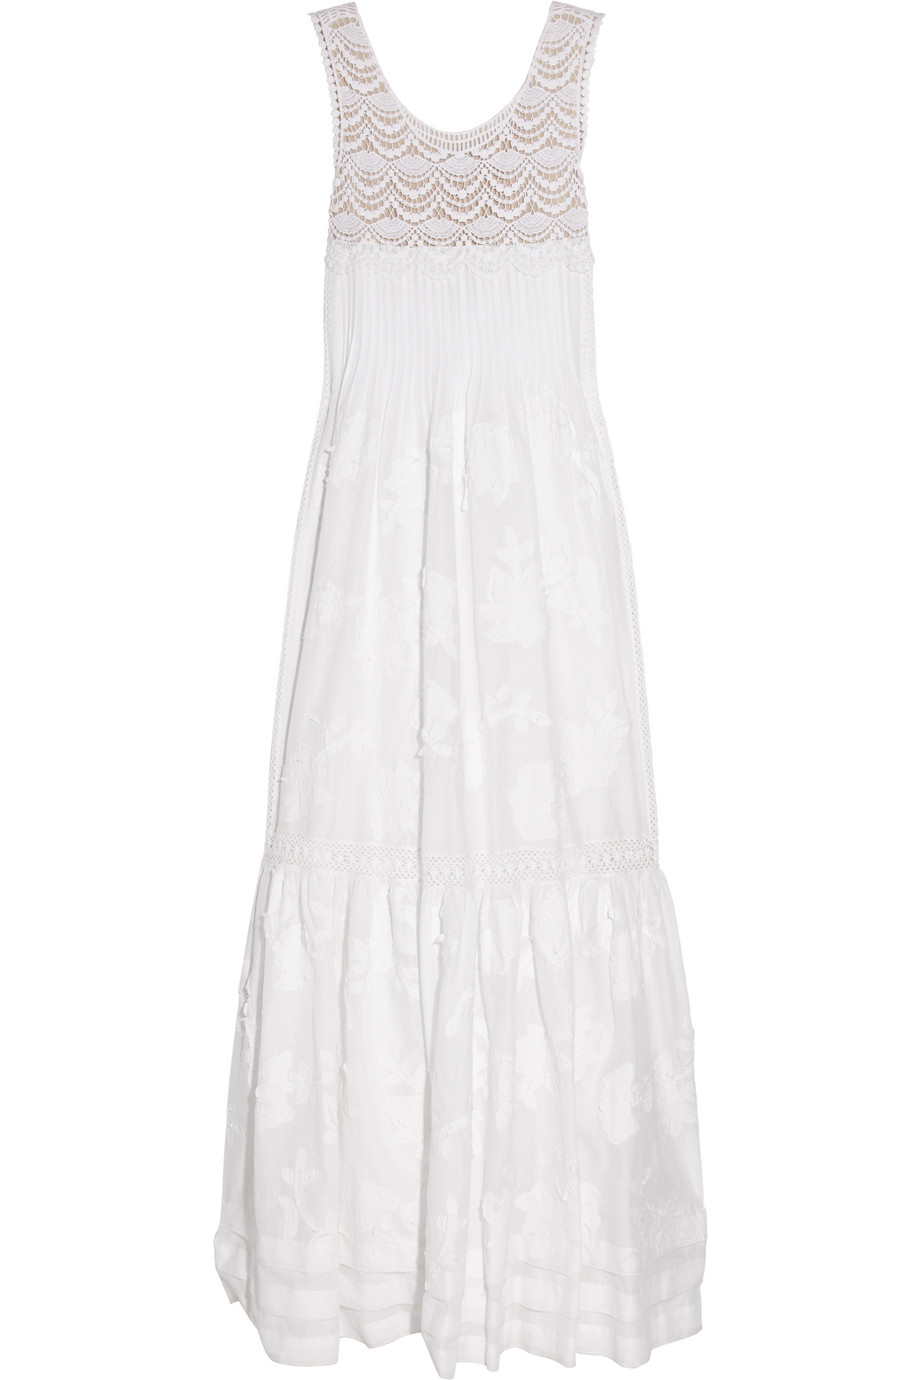 Philosophy Di Alberta Ferretti Crocheted Cotton Maxi Dress in White | Lyst